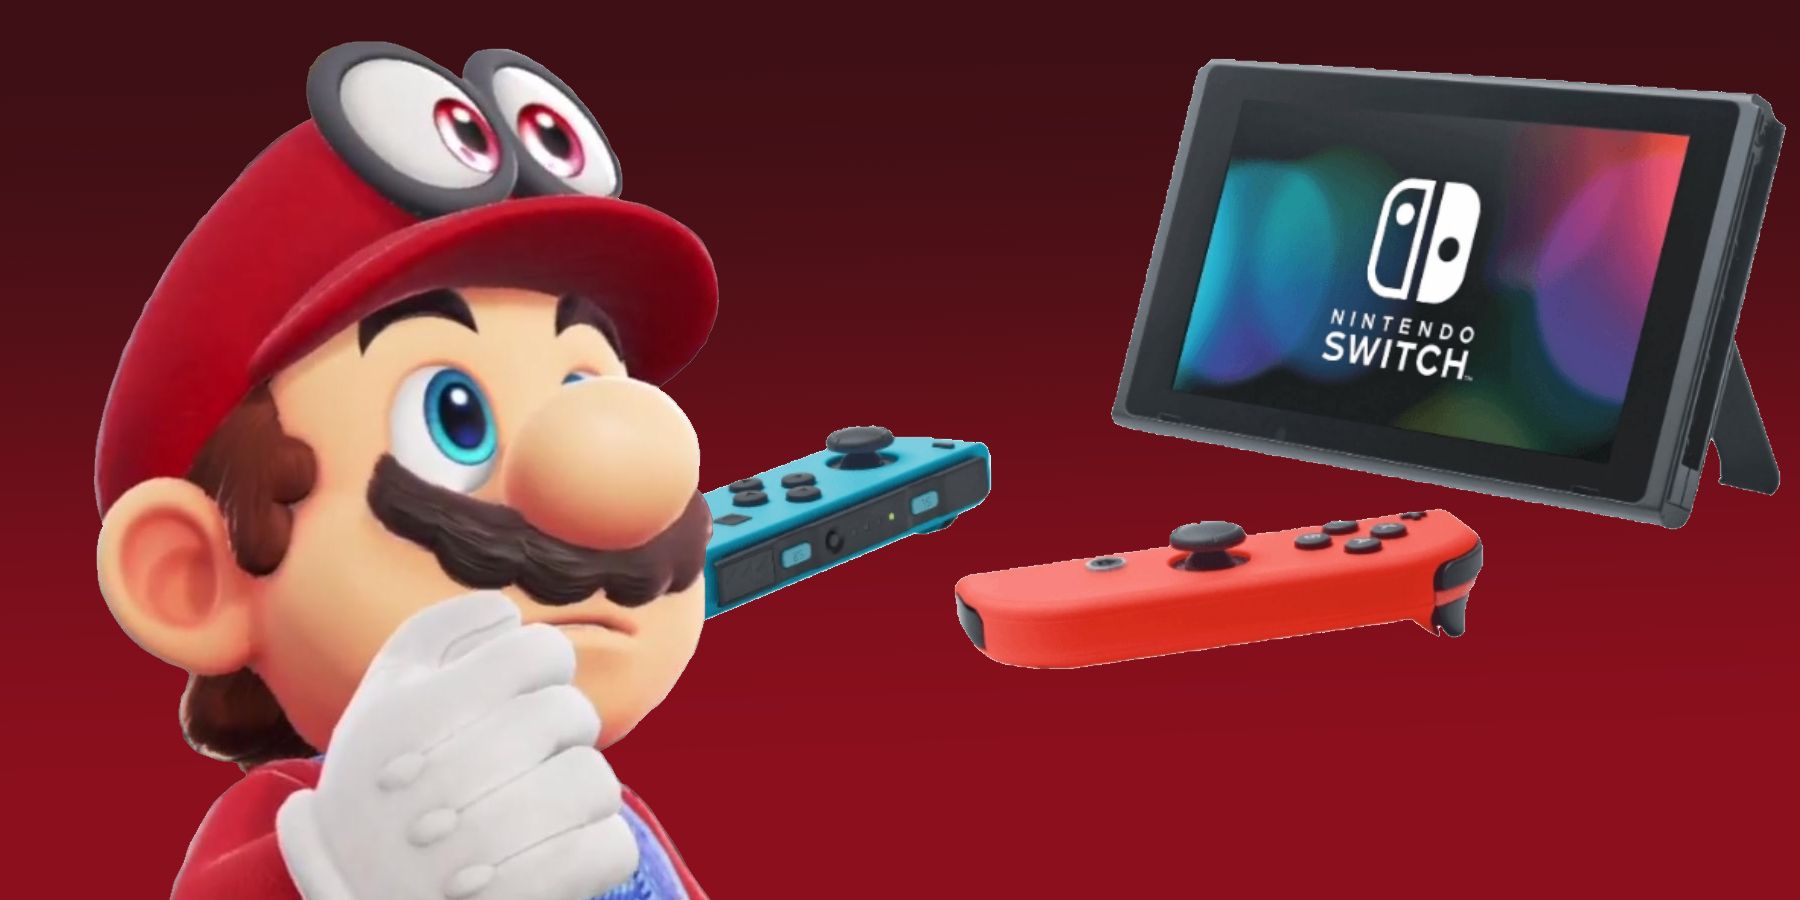 Nintendo-ს გულშემატკივრებს შეიძლება სურდეთ შეაჩერონ OLED გადამრთველის შეძენა